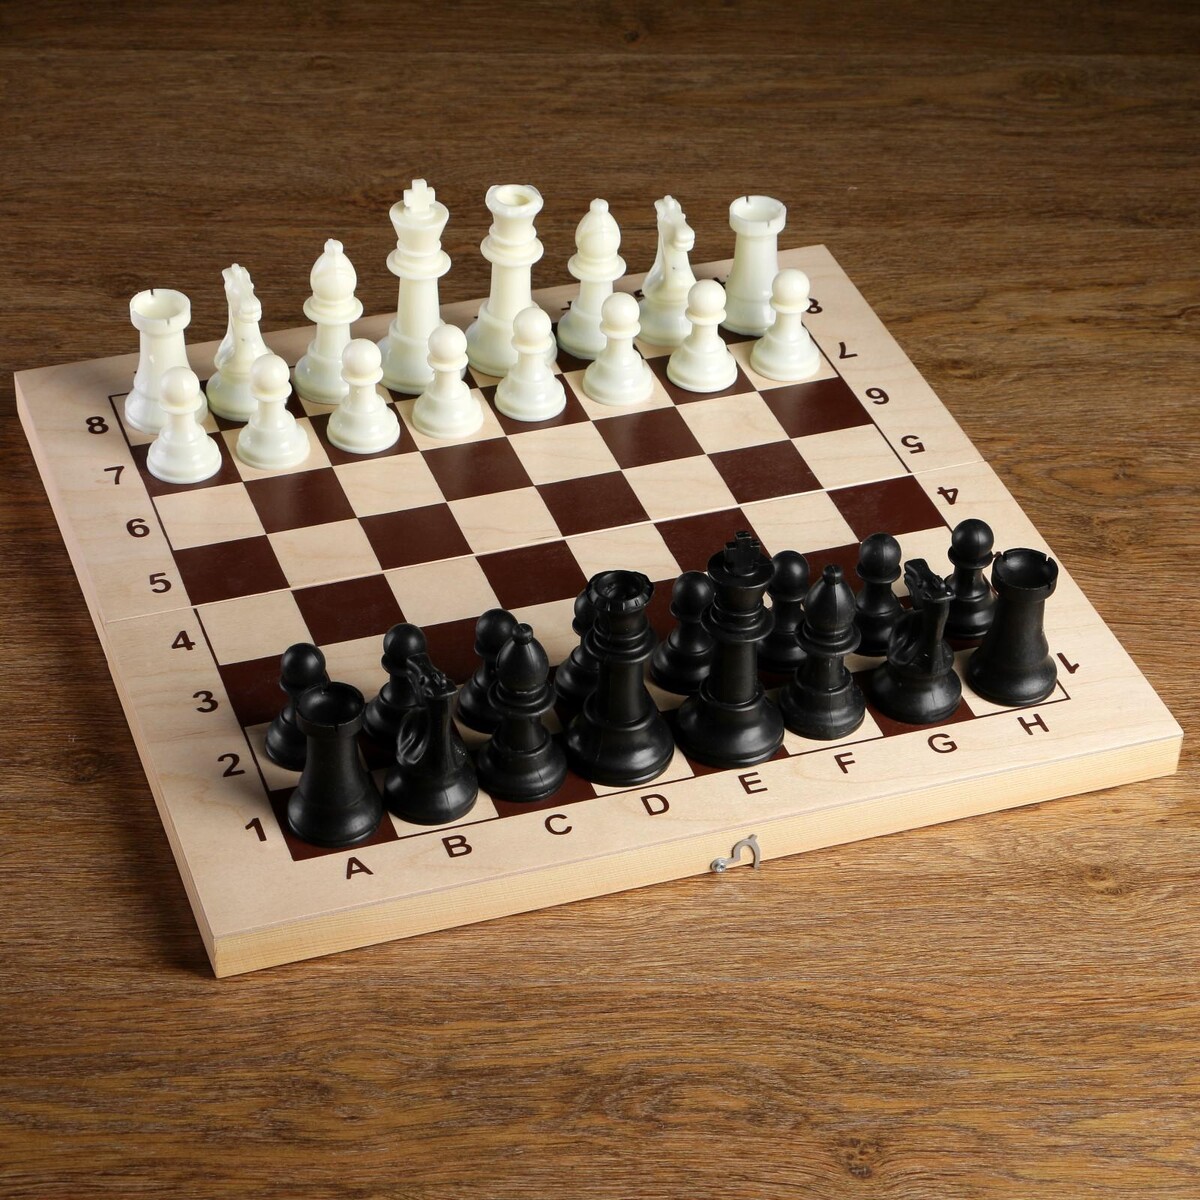 Шахматные фигуры, пластик, король h-10.5 см, пешка h-5 см король сусликов